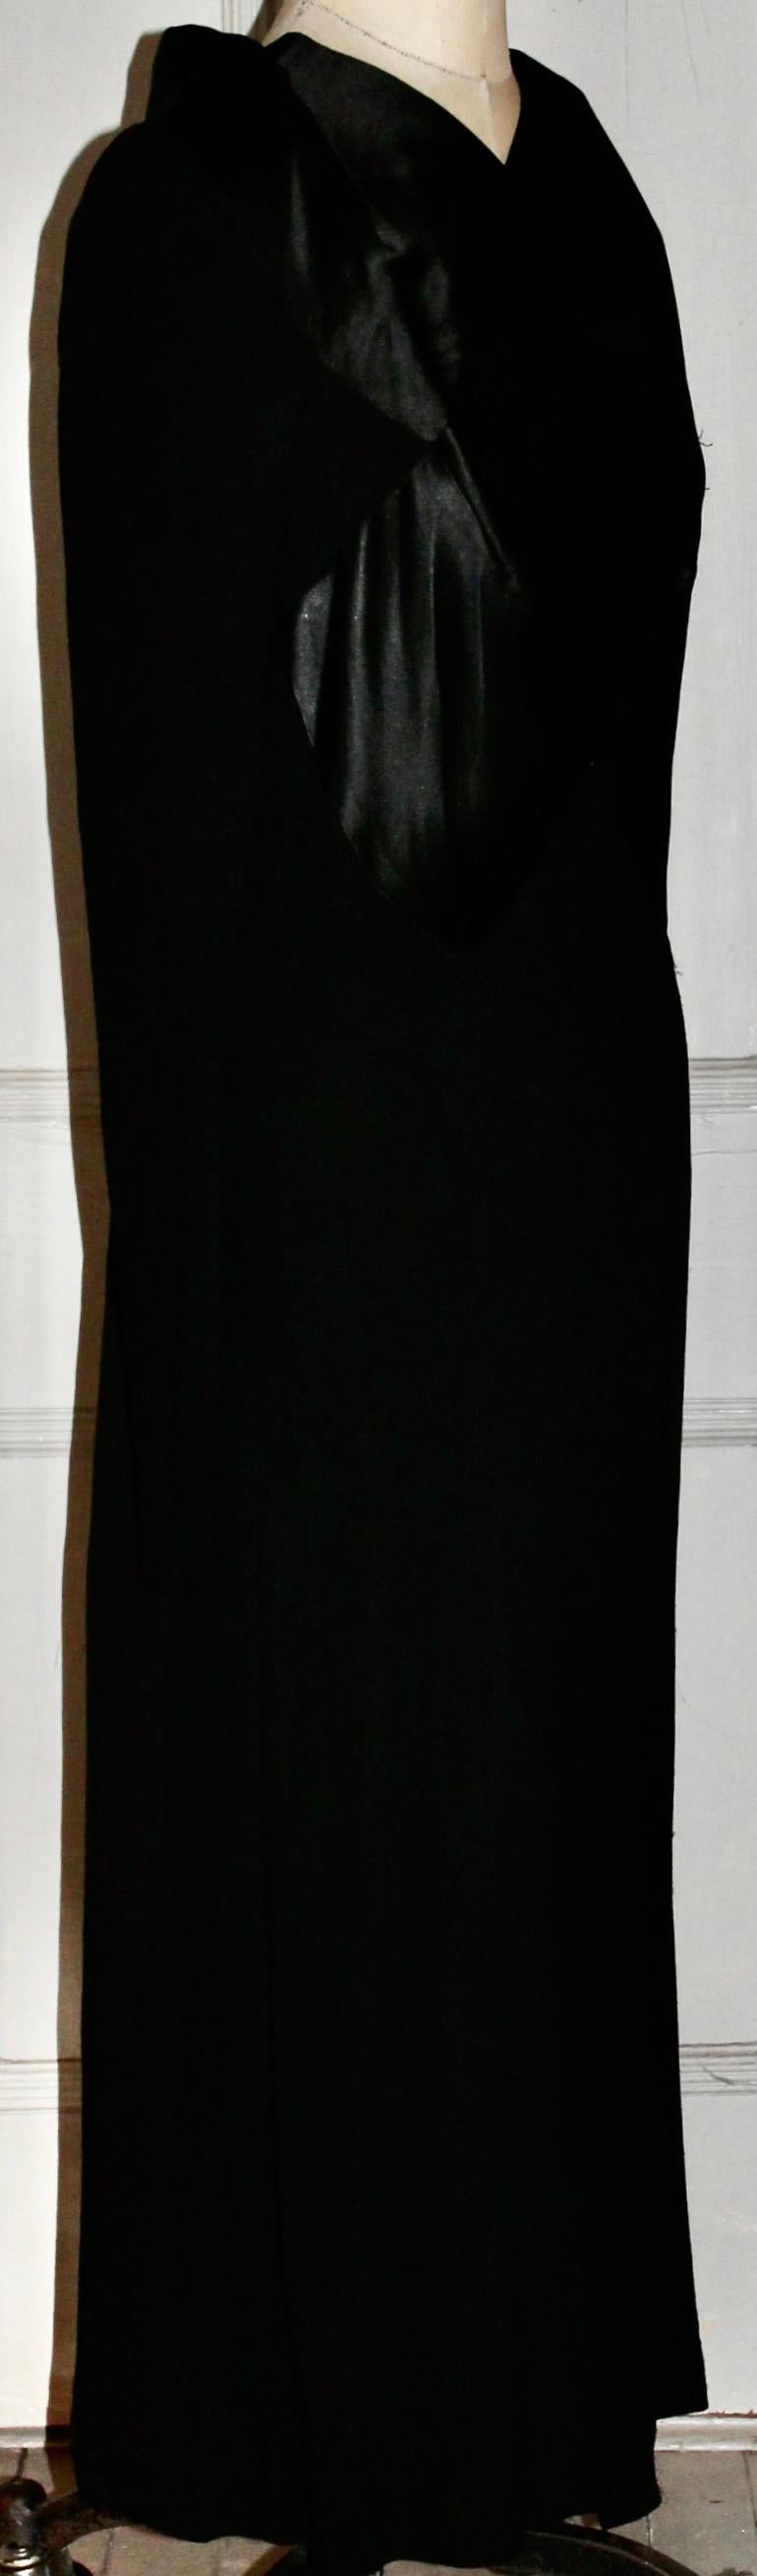 France Vramant Black Crepe Silk Evening Gown, 1930's Paris  For Sale 1